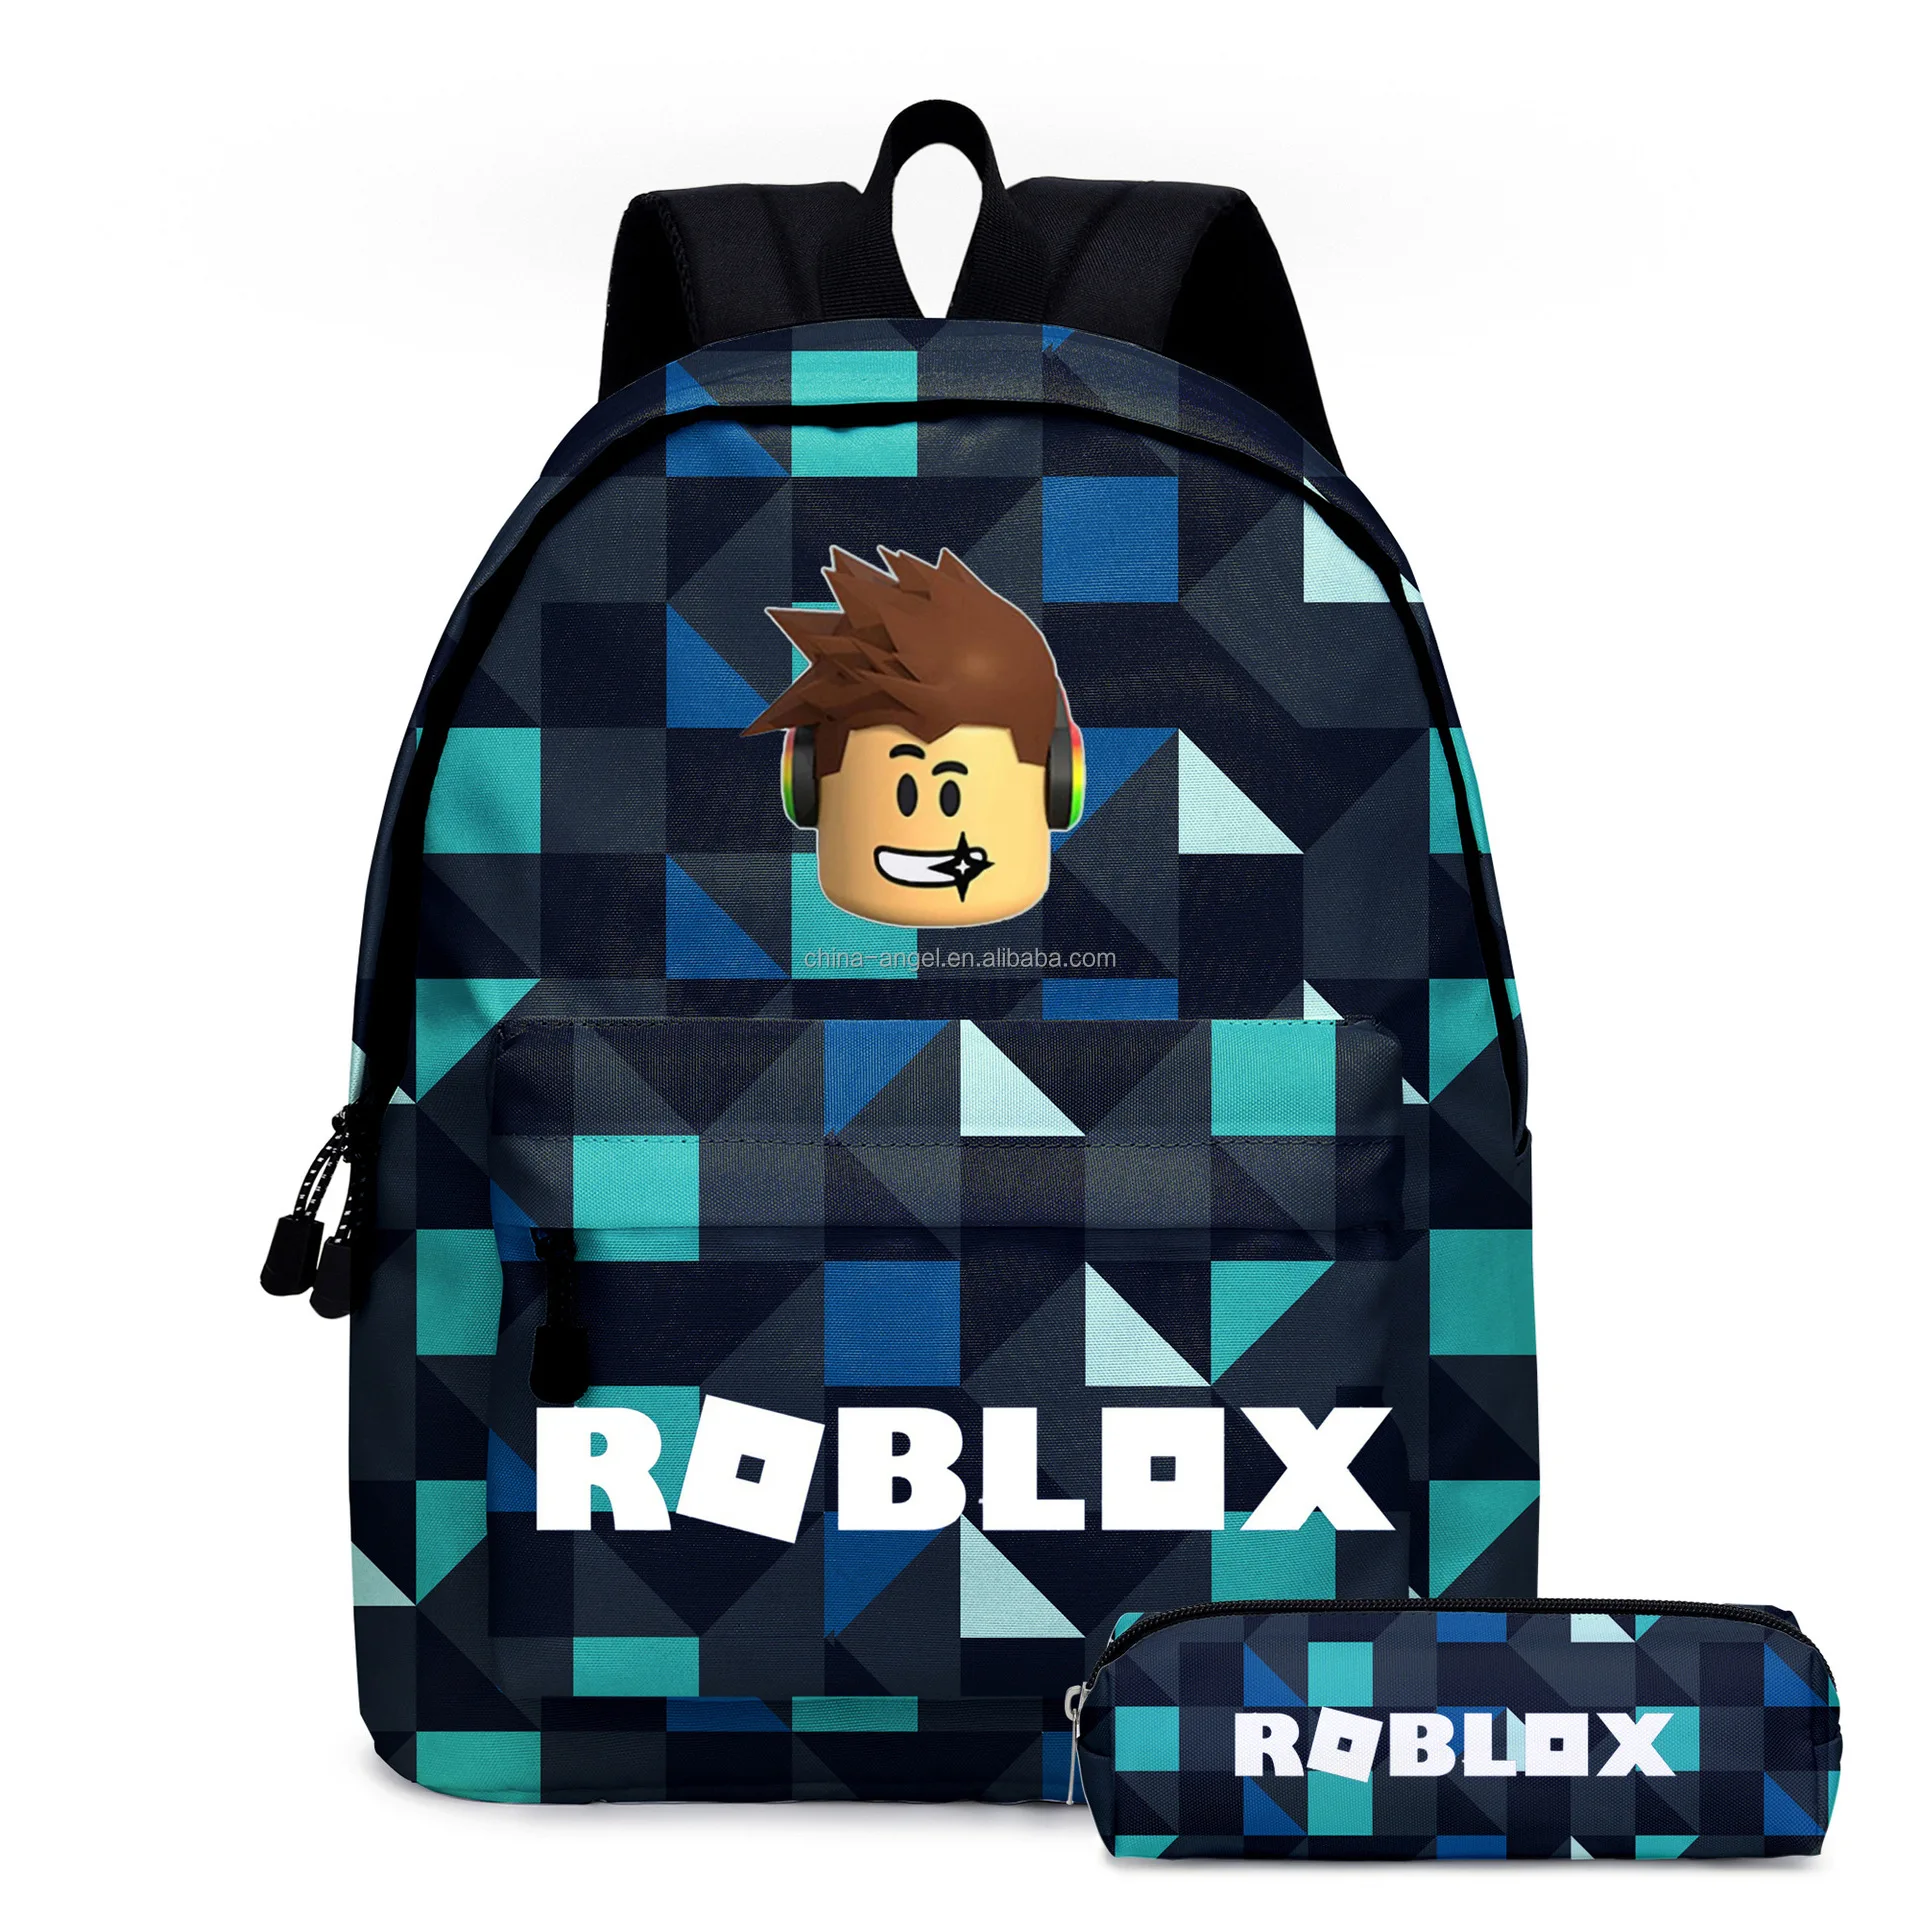 Roblox-mochila De Diseño De Doble Cara Para Niños,Morral Escolar - Roblox Bolsas De La Escuela,Juguete Peluche De Felpa,Juguete De Peluche Product on